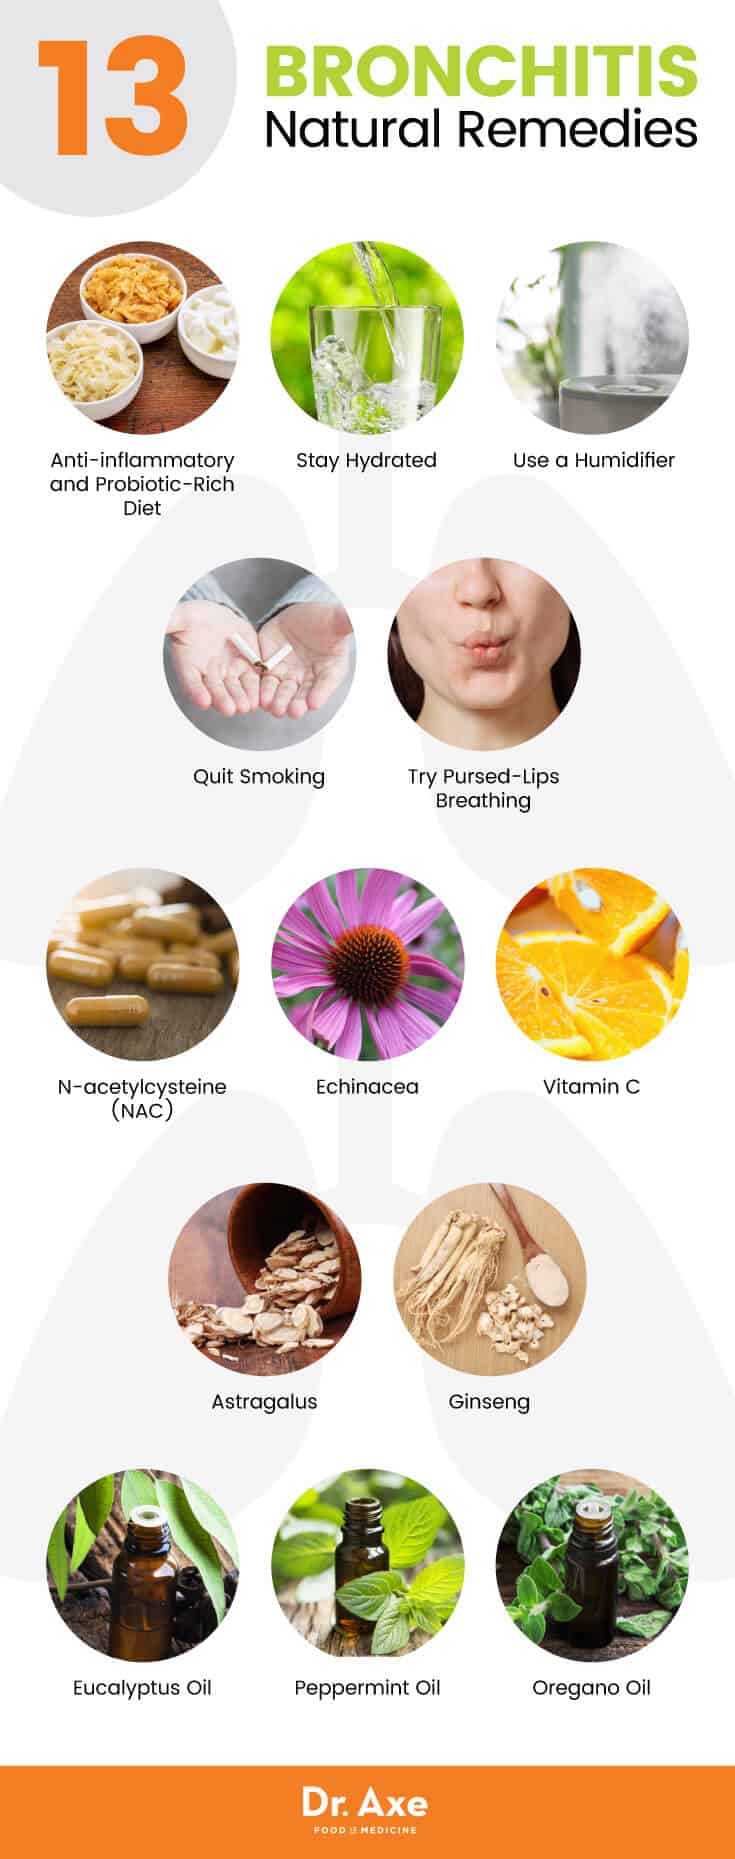 Bronchitis natural remedies